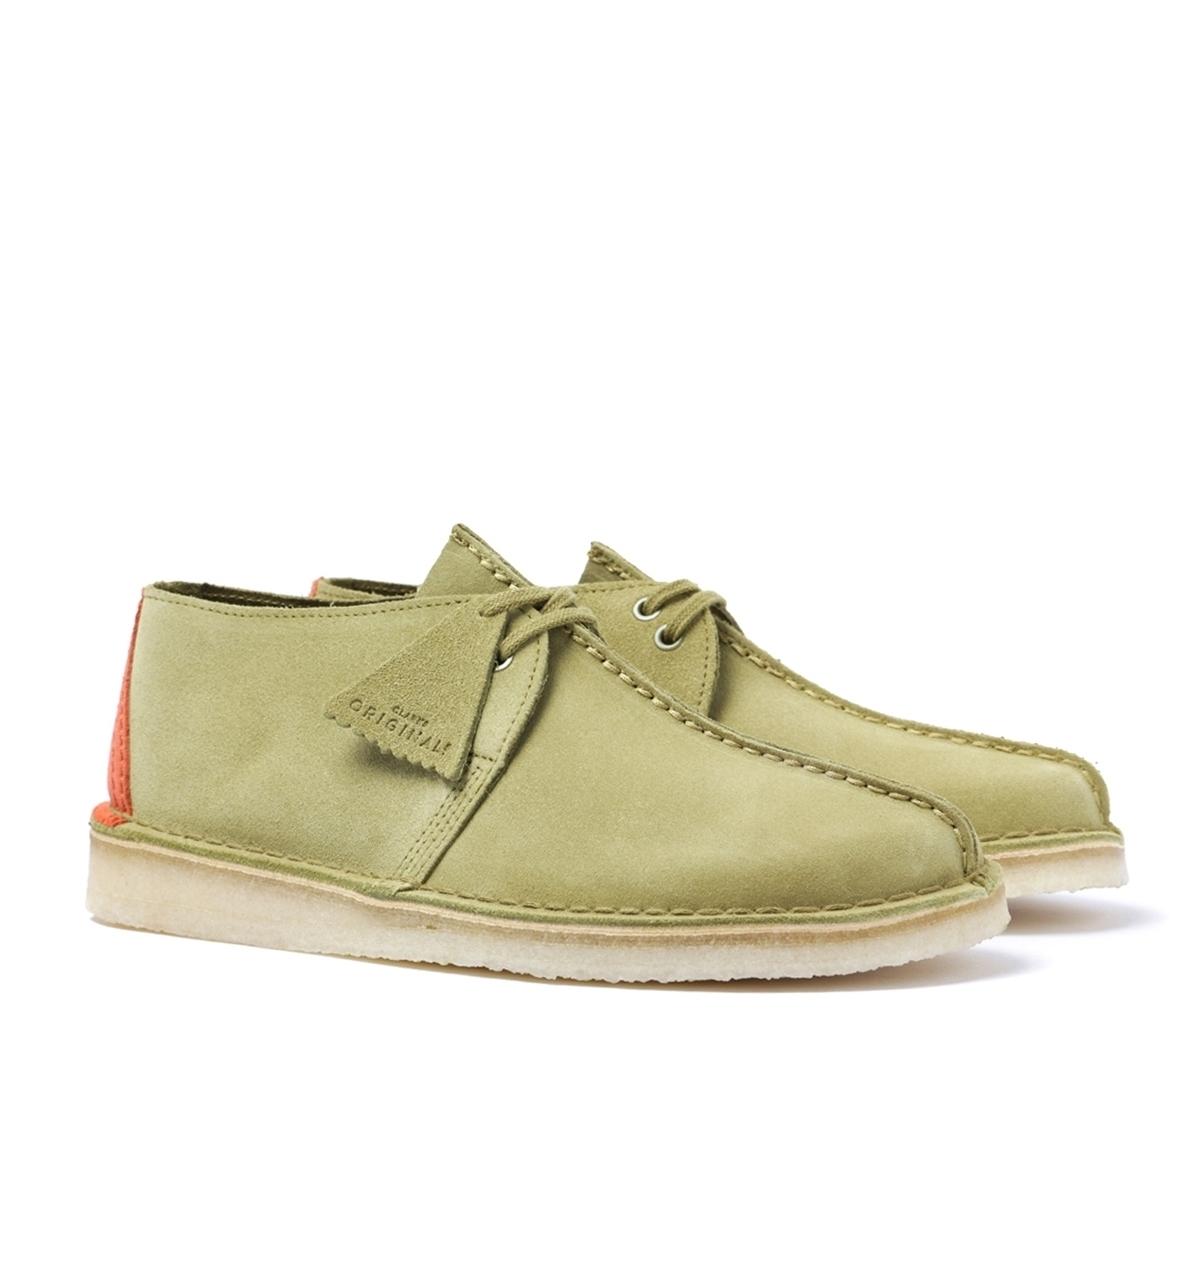 Clarks Originals Desert Trek Green Suede Mens Size Shoes 144179 Original CO c o 